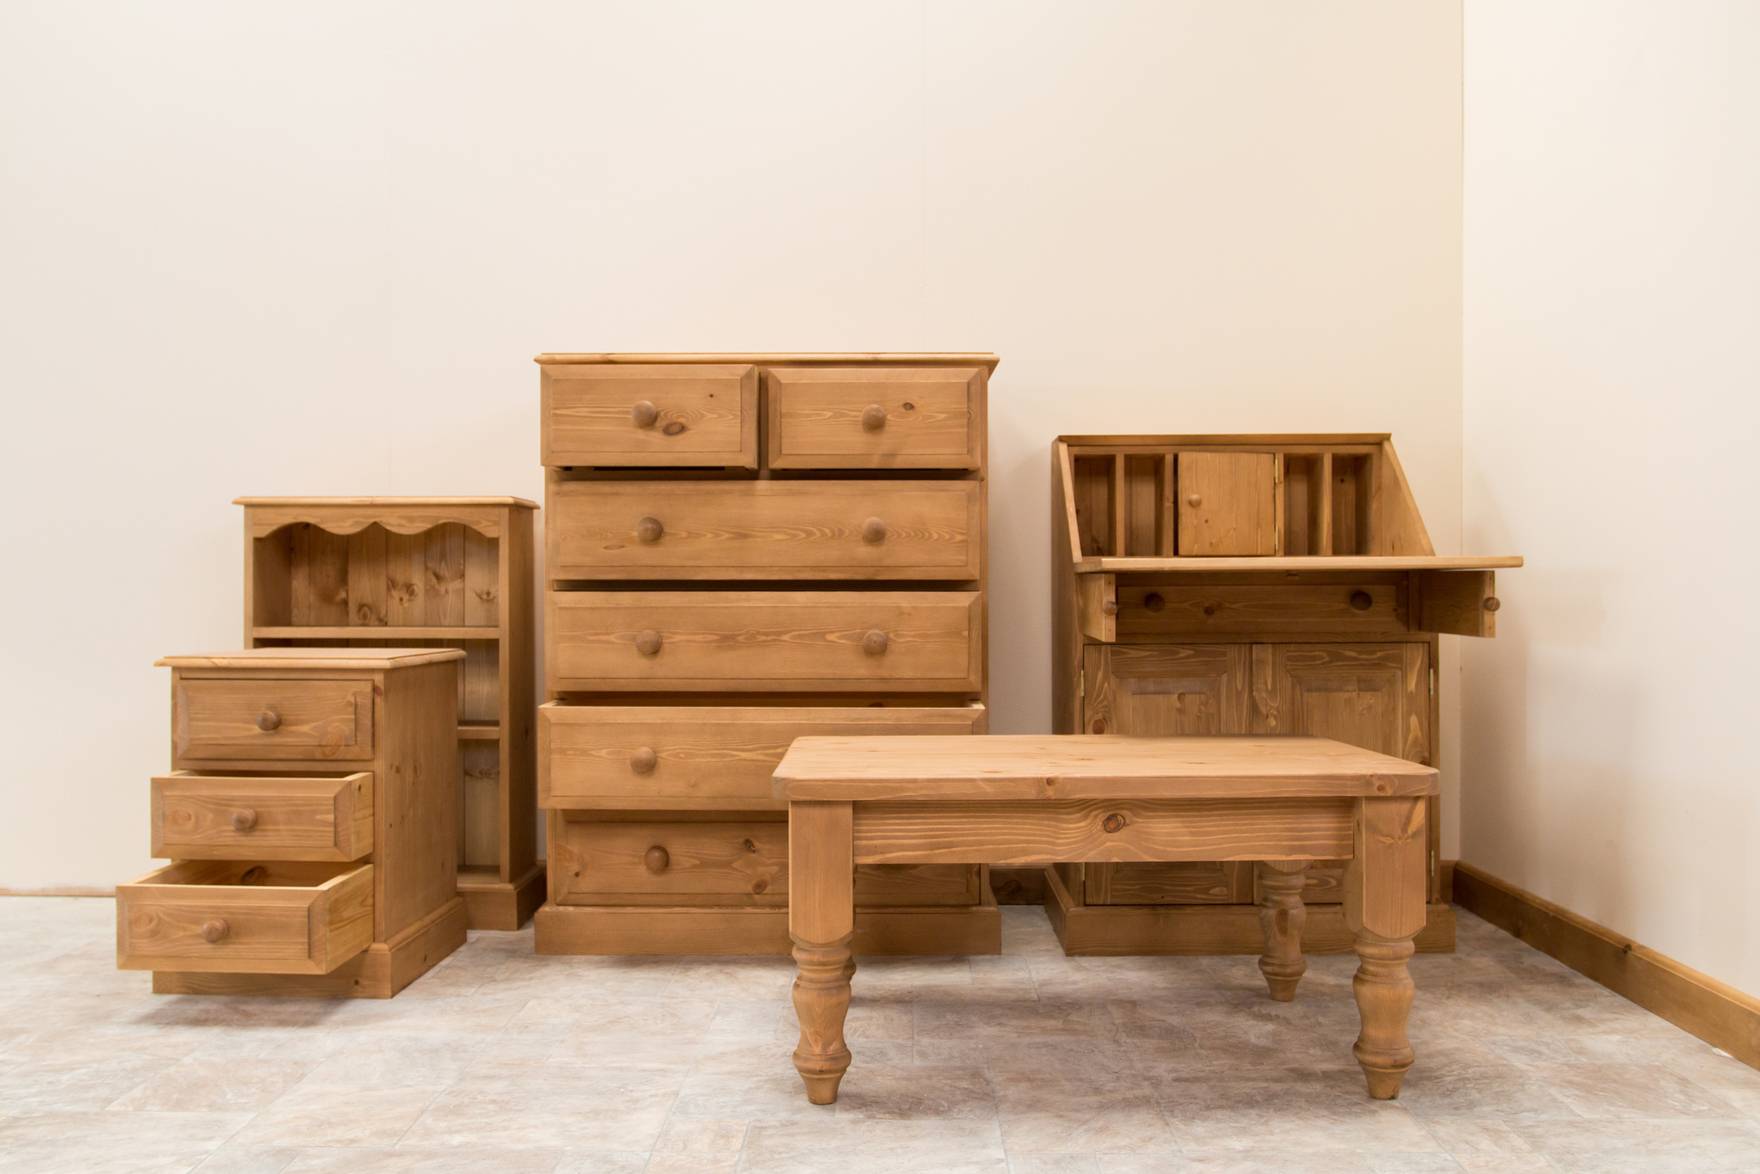 Мебель из натурального дерева своими руками для дома и сада: инструкции по изготовлению | file-don.ru